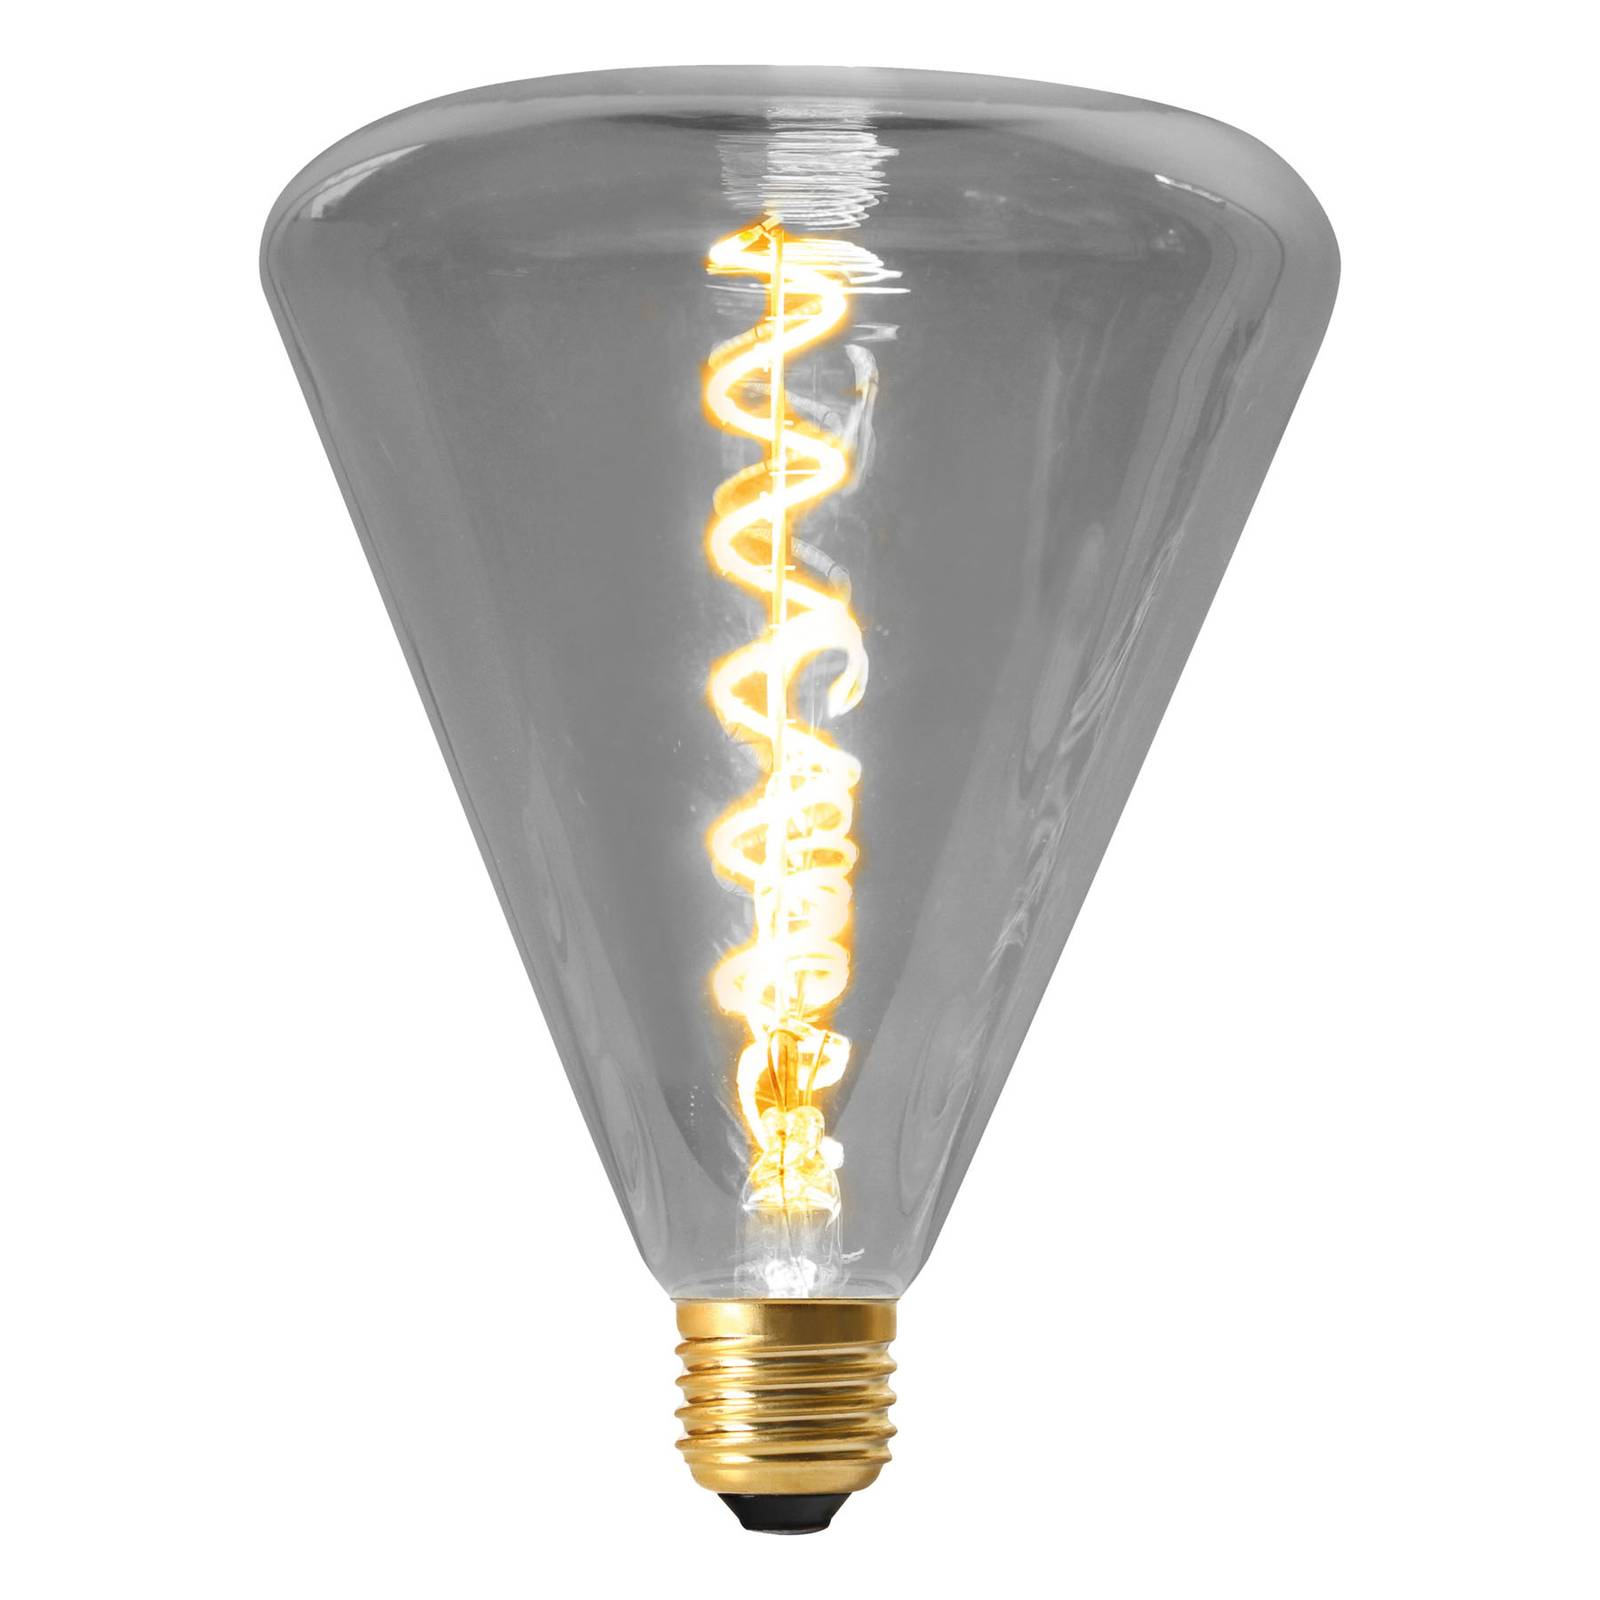 Naeve Leuchten LED-Lampe Dilly E27 4W 2200K dimmbar, grau getönt